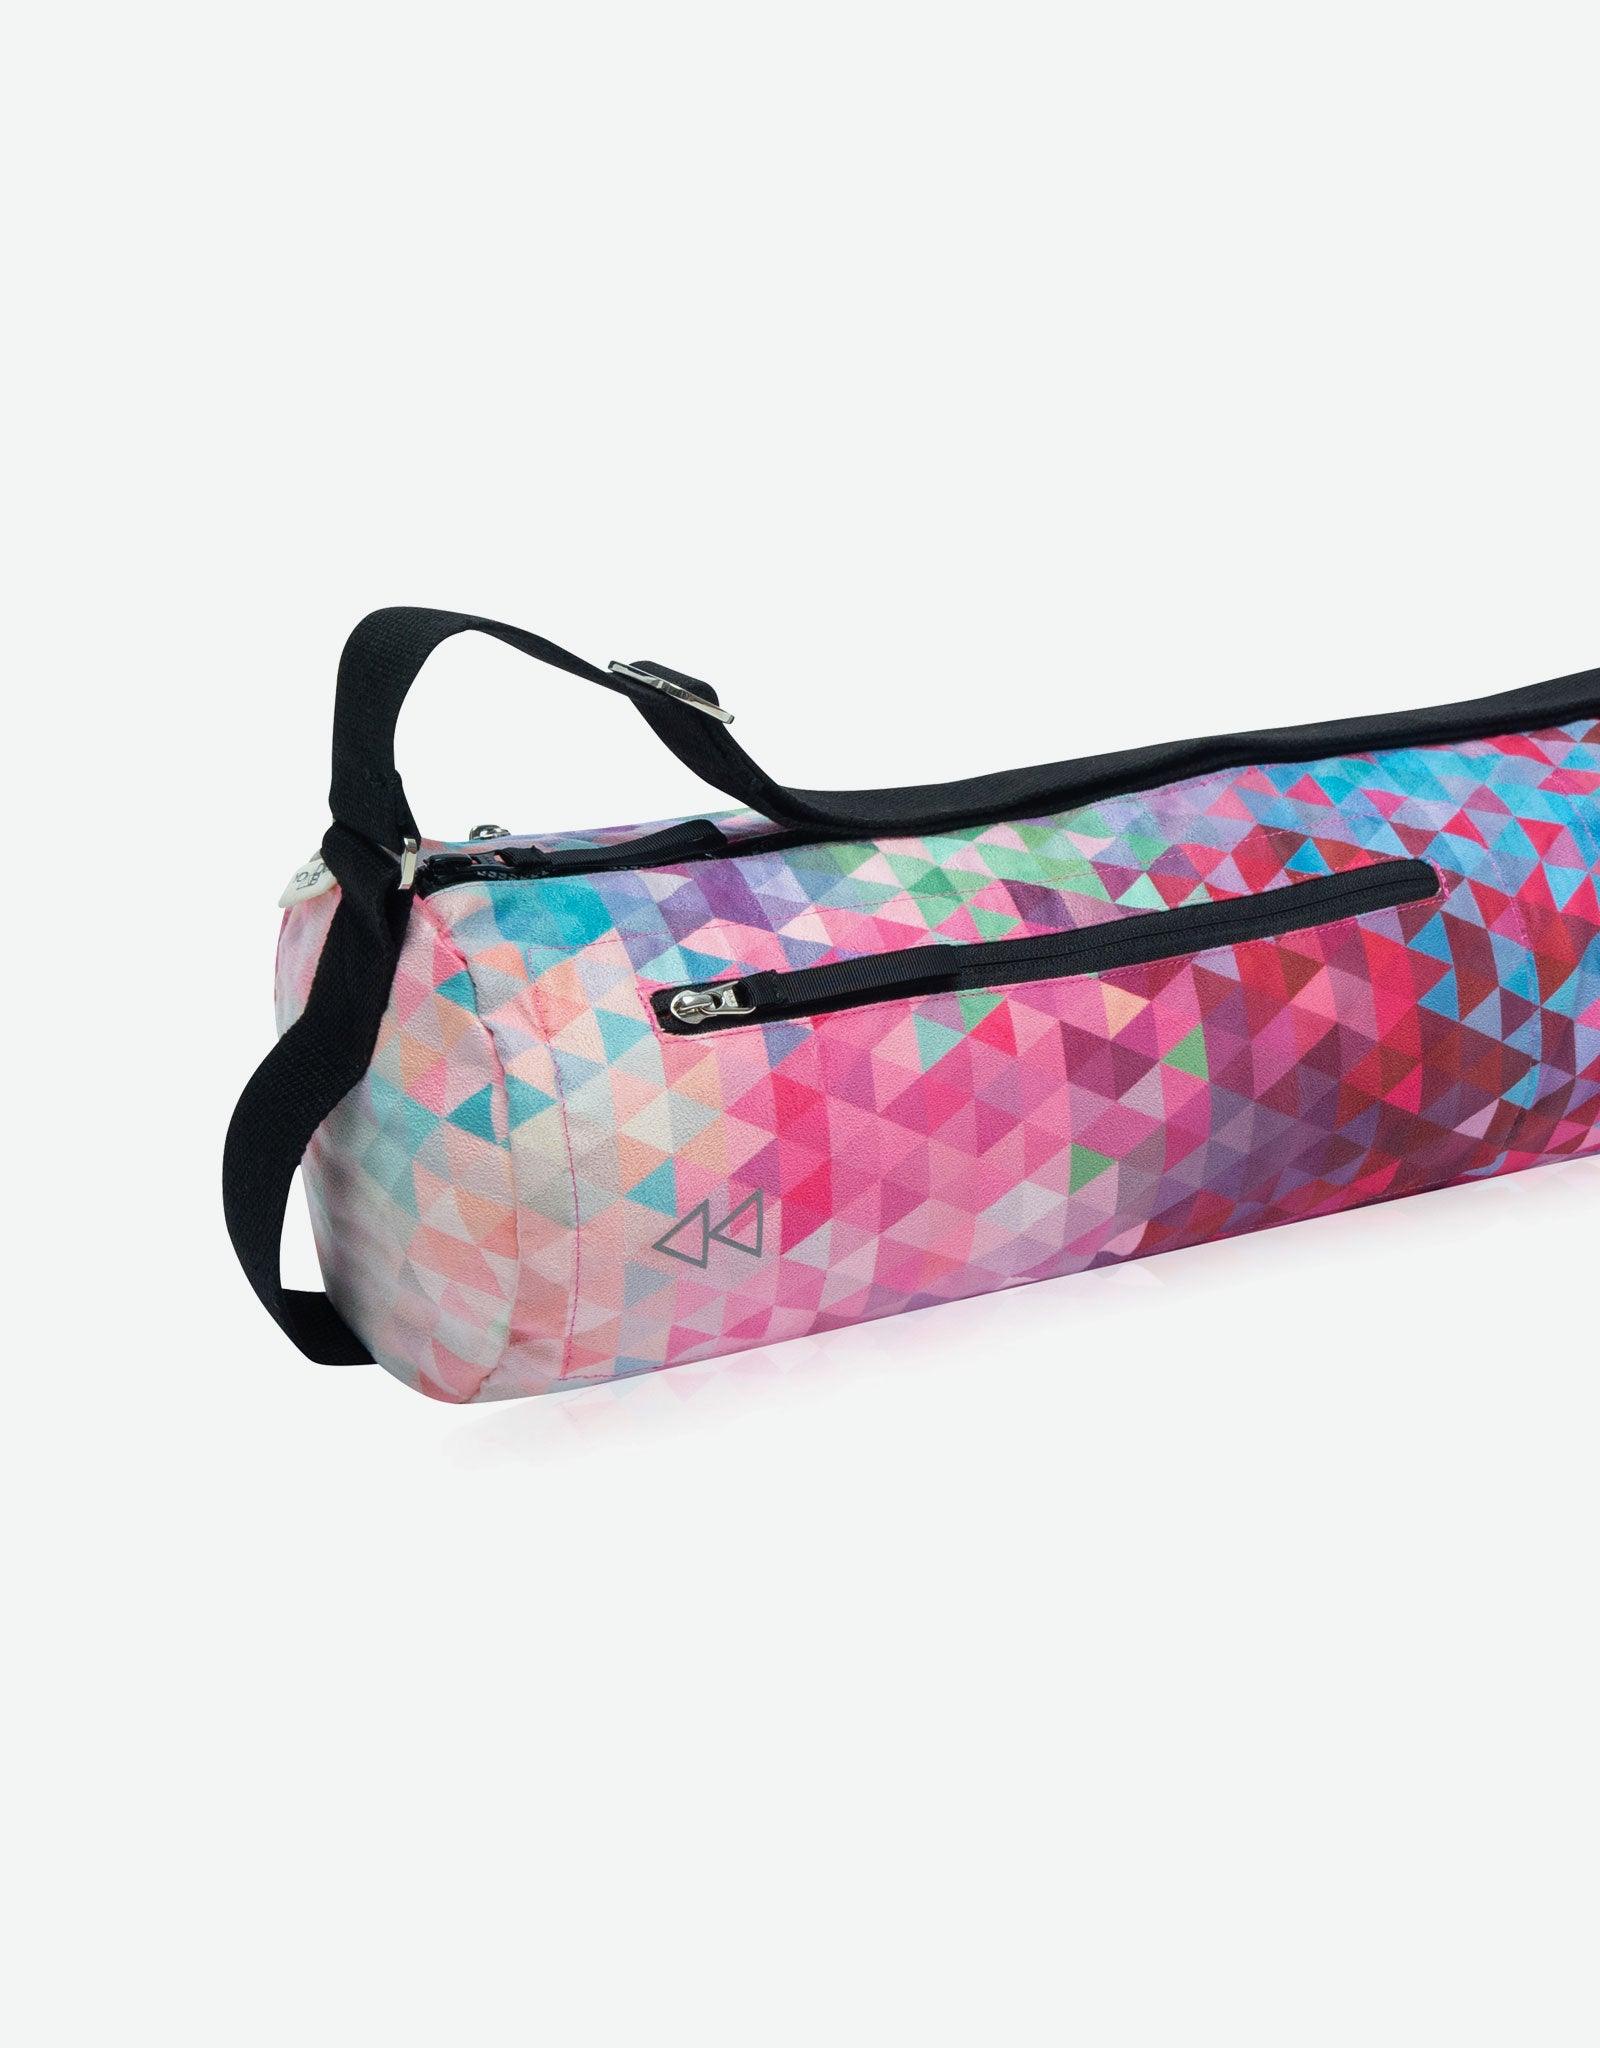 Yoga Mat Bag with Adjustable Carry On Strap For Gym, Pilates, Printed Yoga  Bag